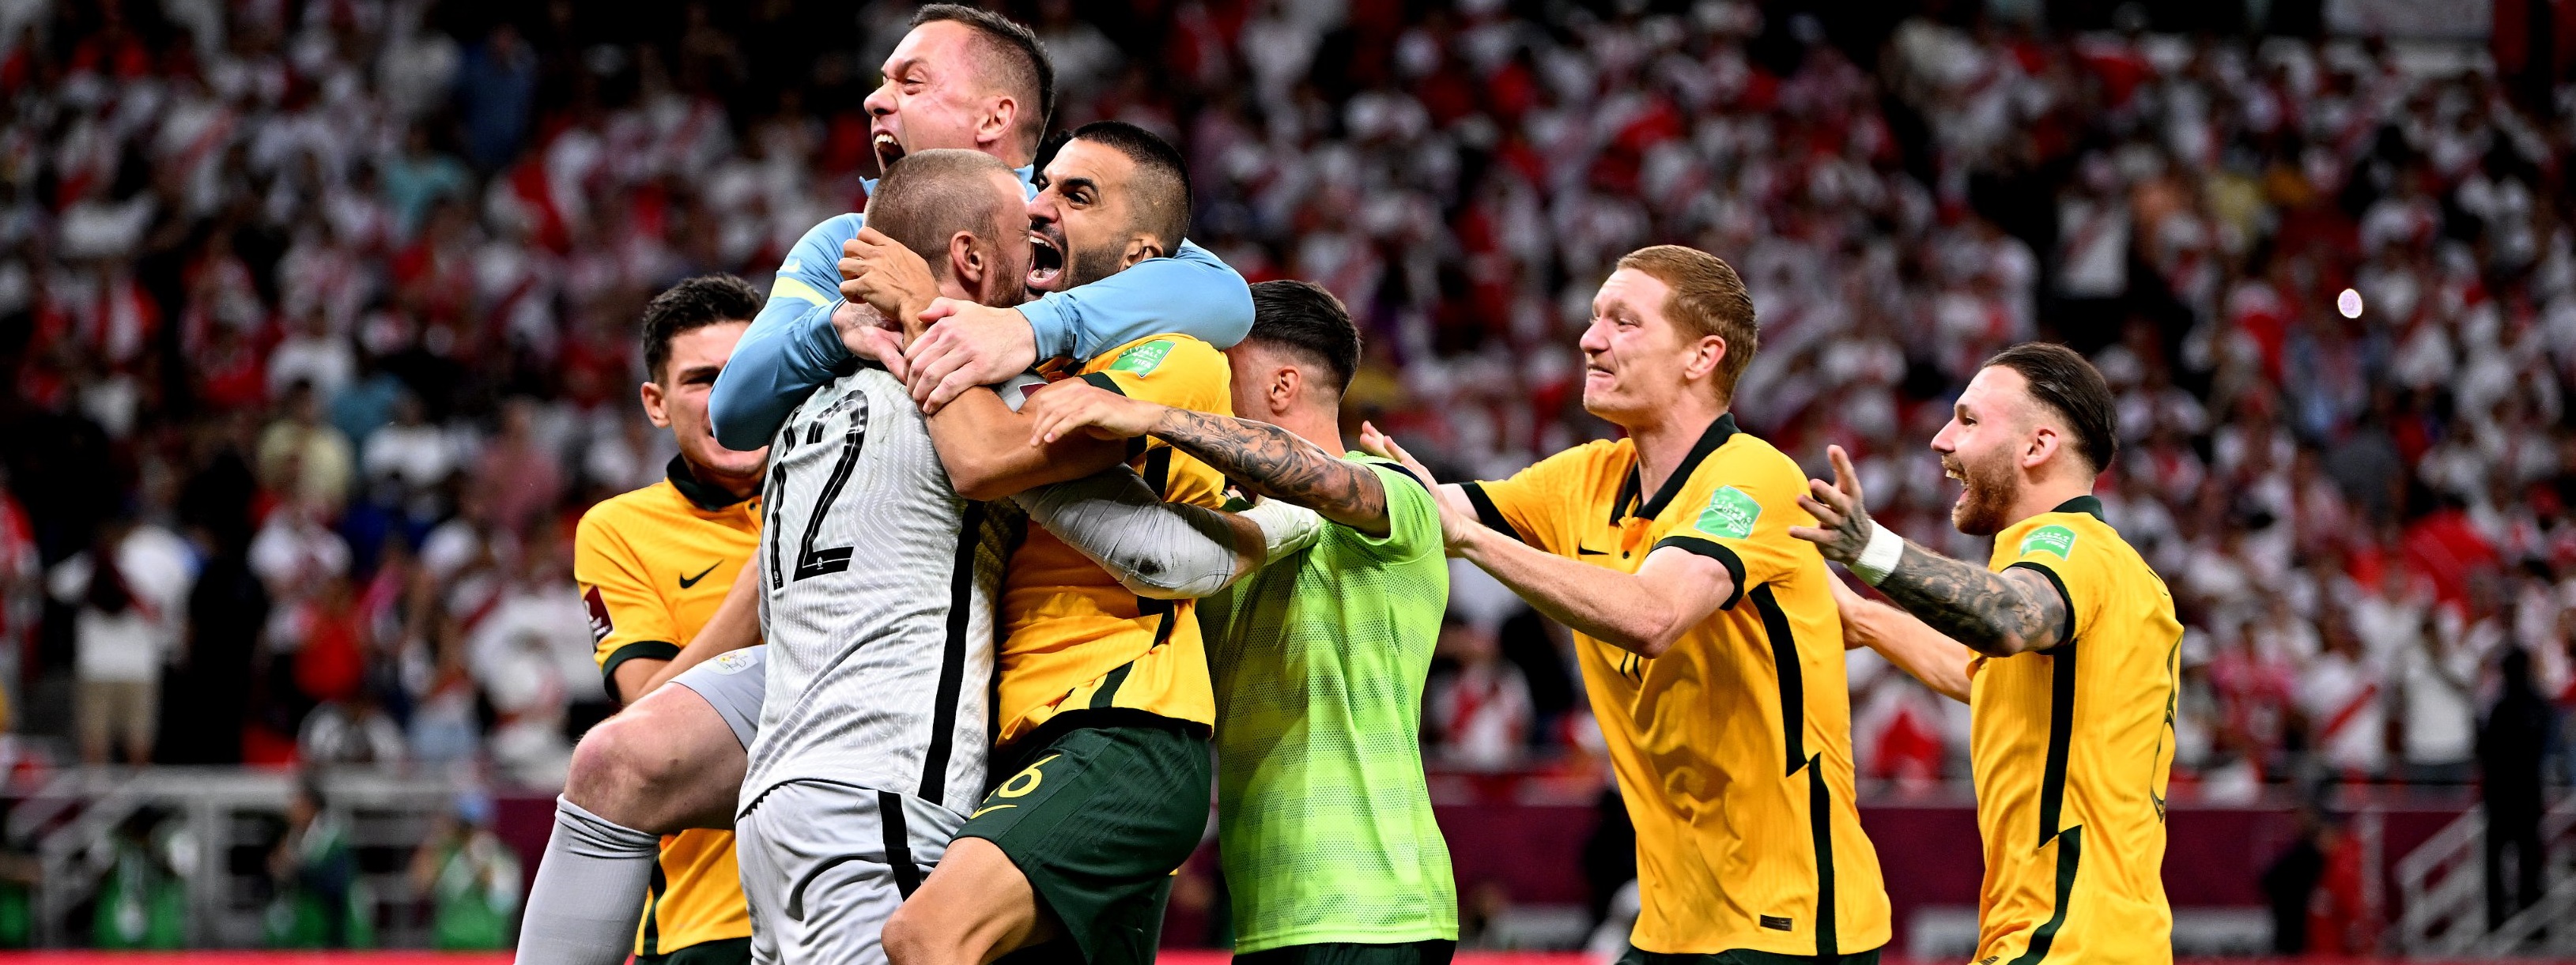 Kalahkan Peru Lewat Adu Penalti, Australia Main di Piala Dunia Qatar 2022